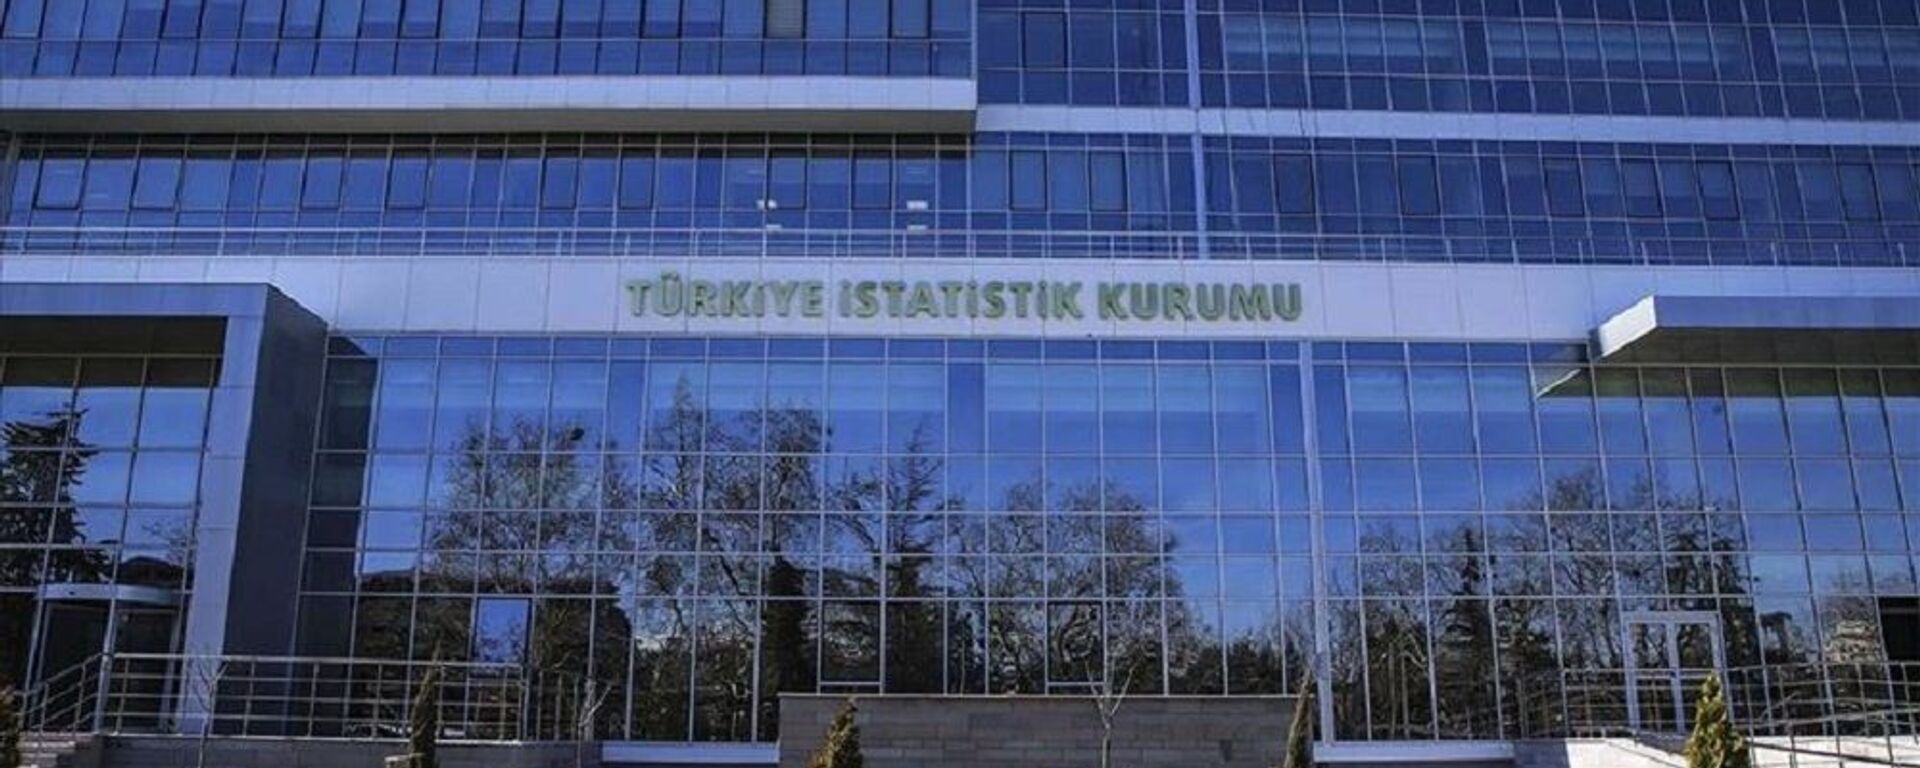 Türkiye İstatistik Kurumu Başkanlığı (TÜİK) - Sputnik Türkiye, 1920, 23.06.2021